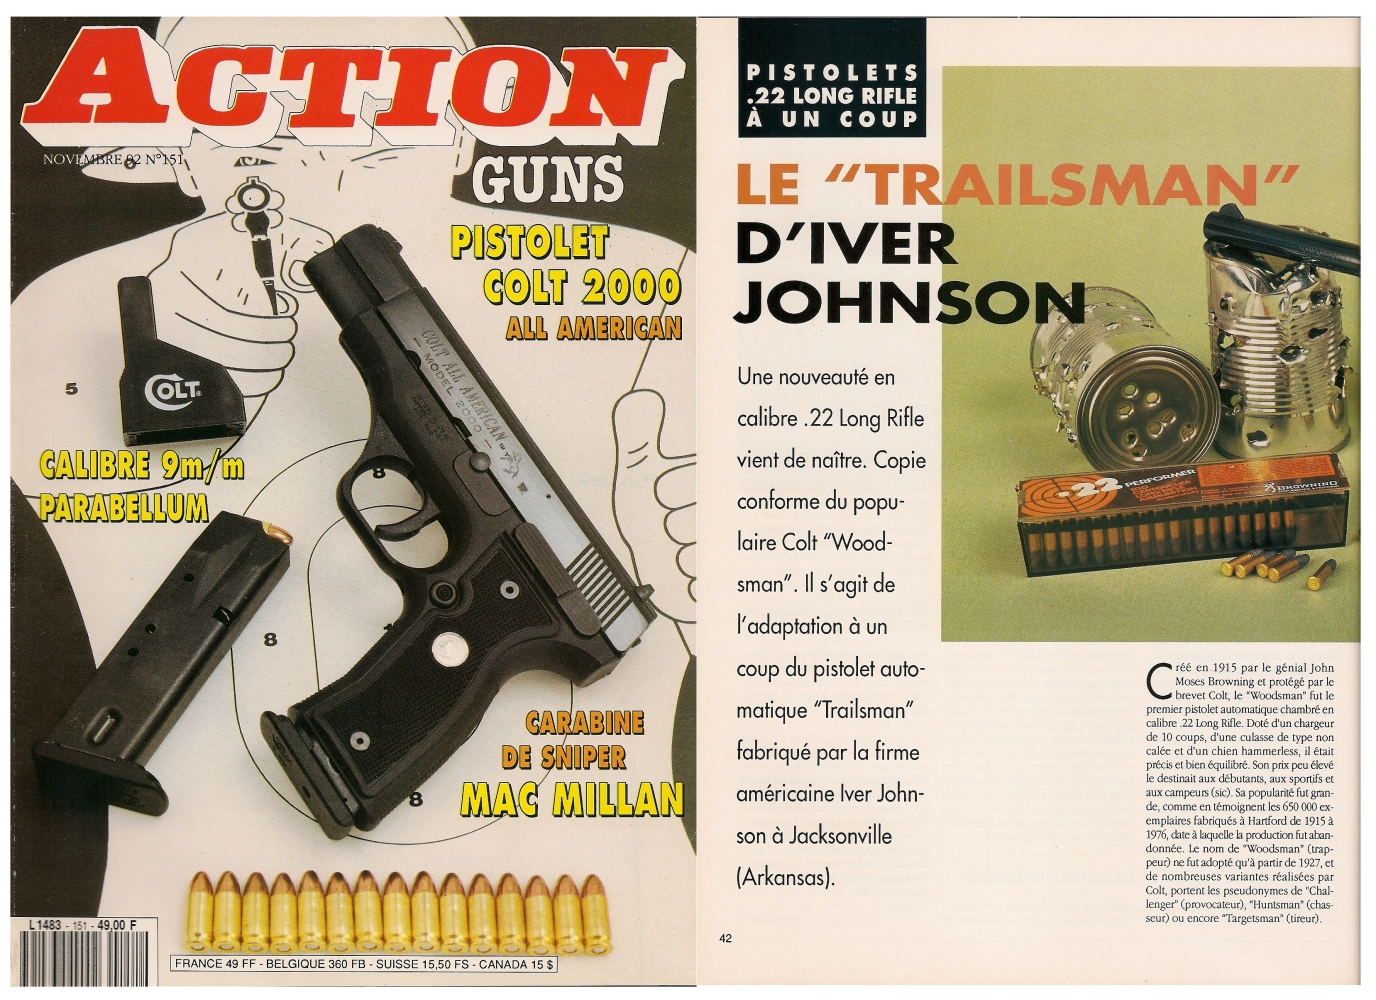 Le banc d’essai du pistolet Iver Johnson « Trailsman » a été publié sur 5 pages dans le magazine Action Guns n° 151 (novembre 1992). 